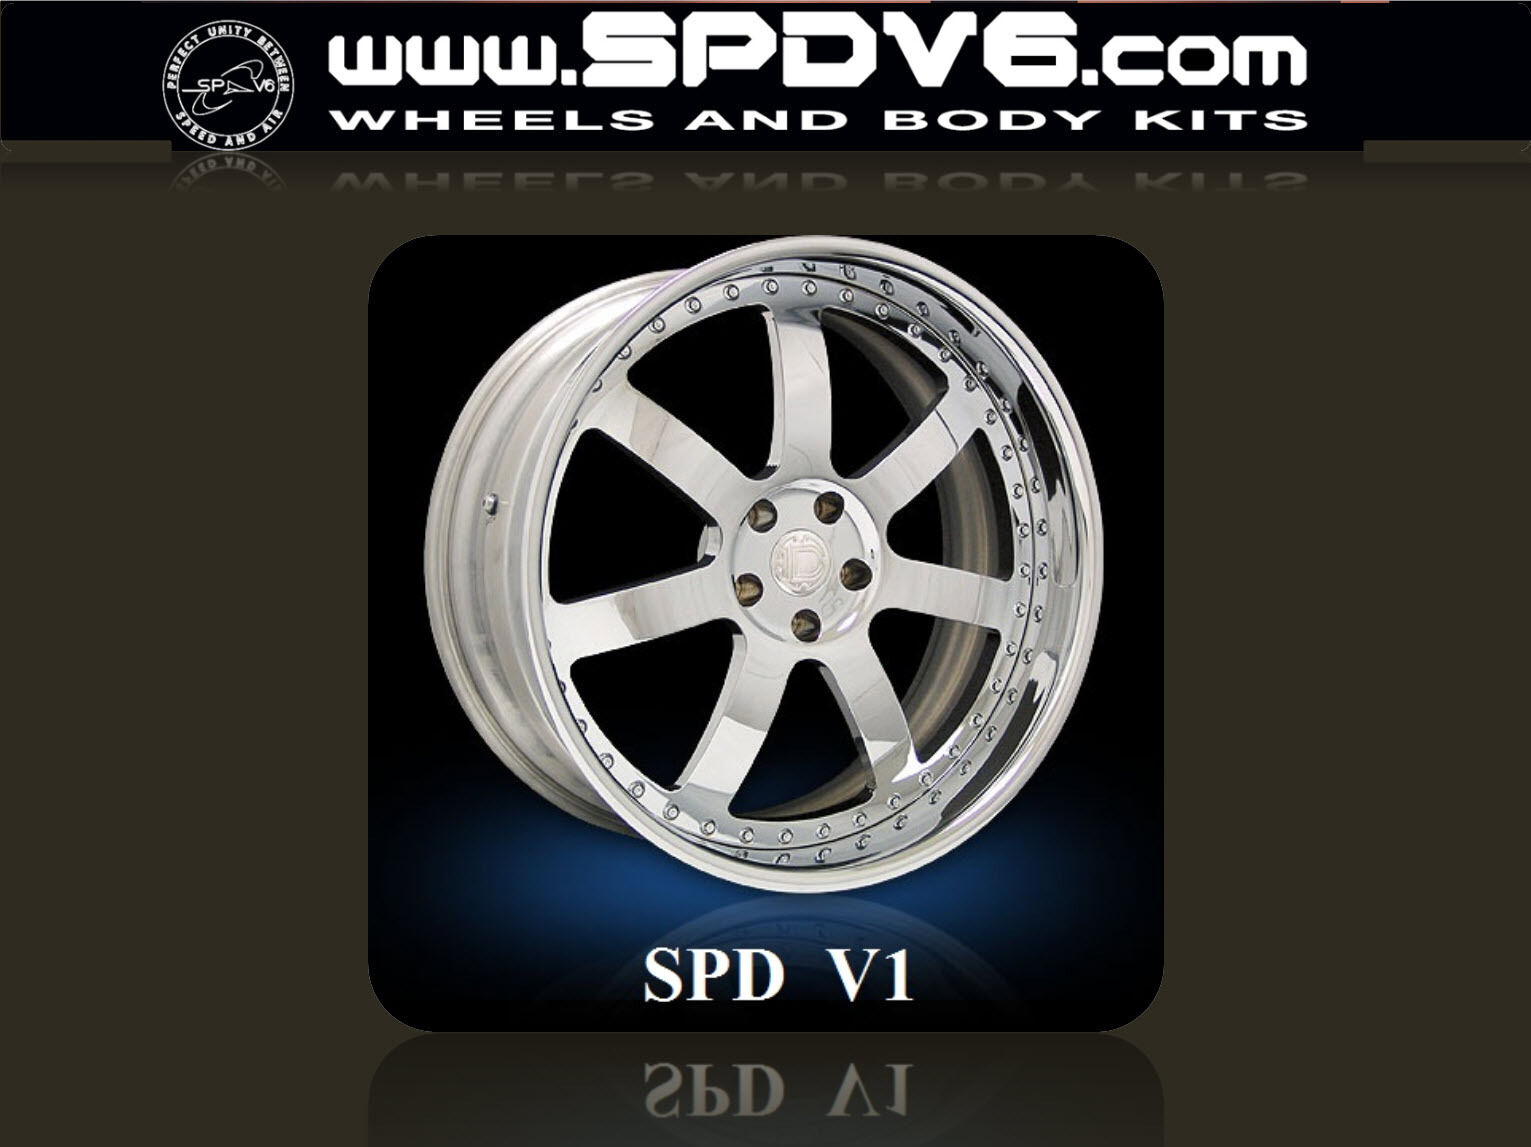 SPDV1-SERIES 20” 3pc Forged Wheels Rims Audi R8, Lamborghini, Ferrari, SLR, GTR